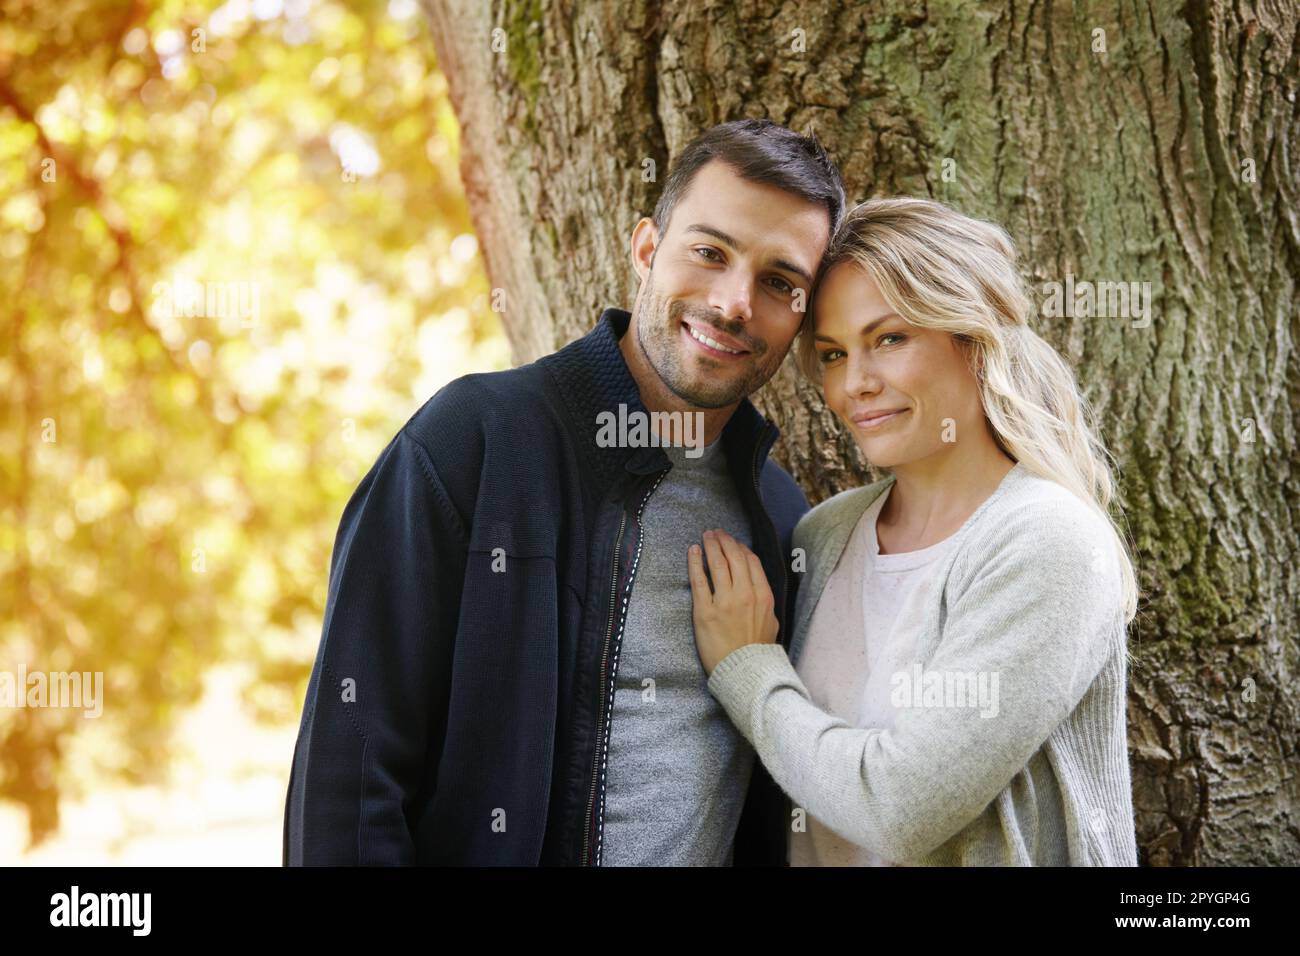 C'est comme tomber amoureux tous les jours. Portrait d'un jeune couple souriant qui profite d'une journée dans le parc ensemble. Banque D'Images